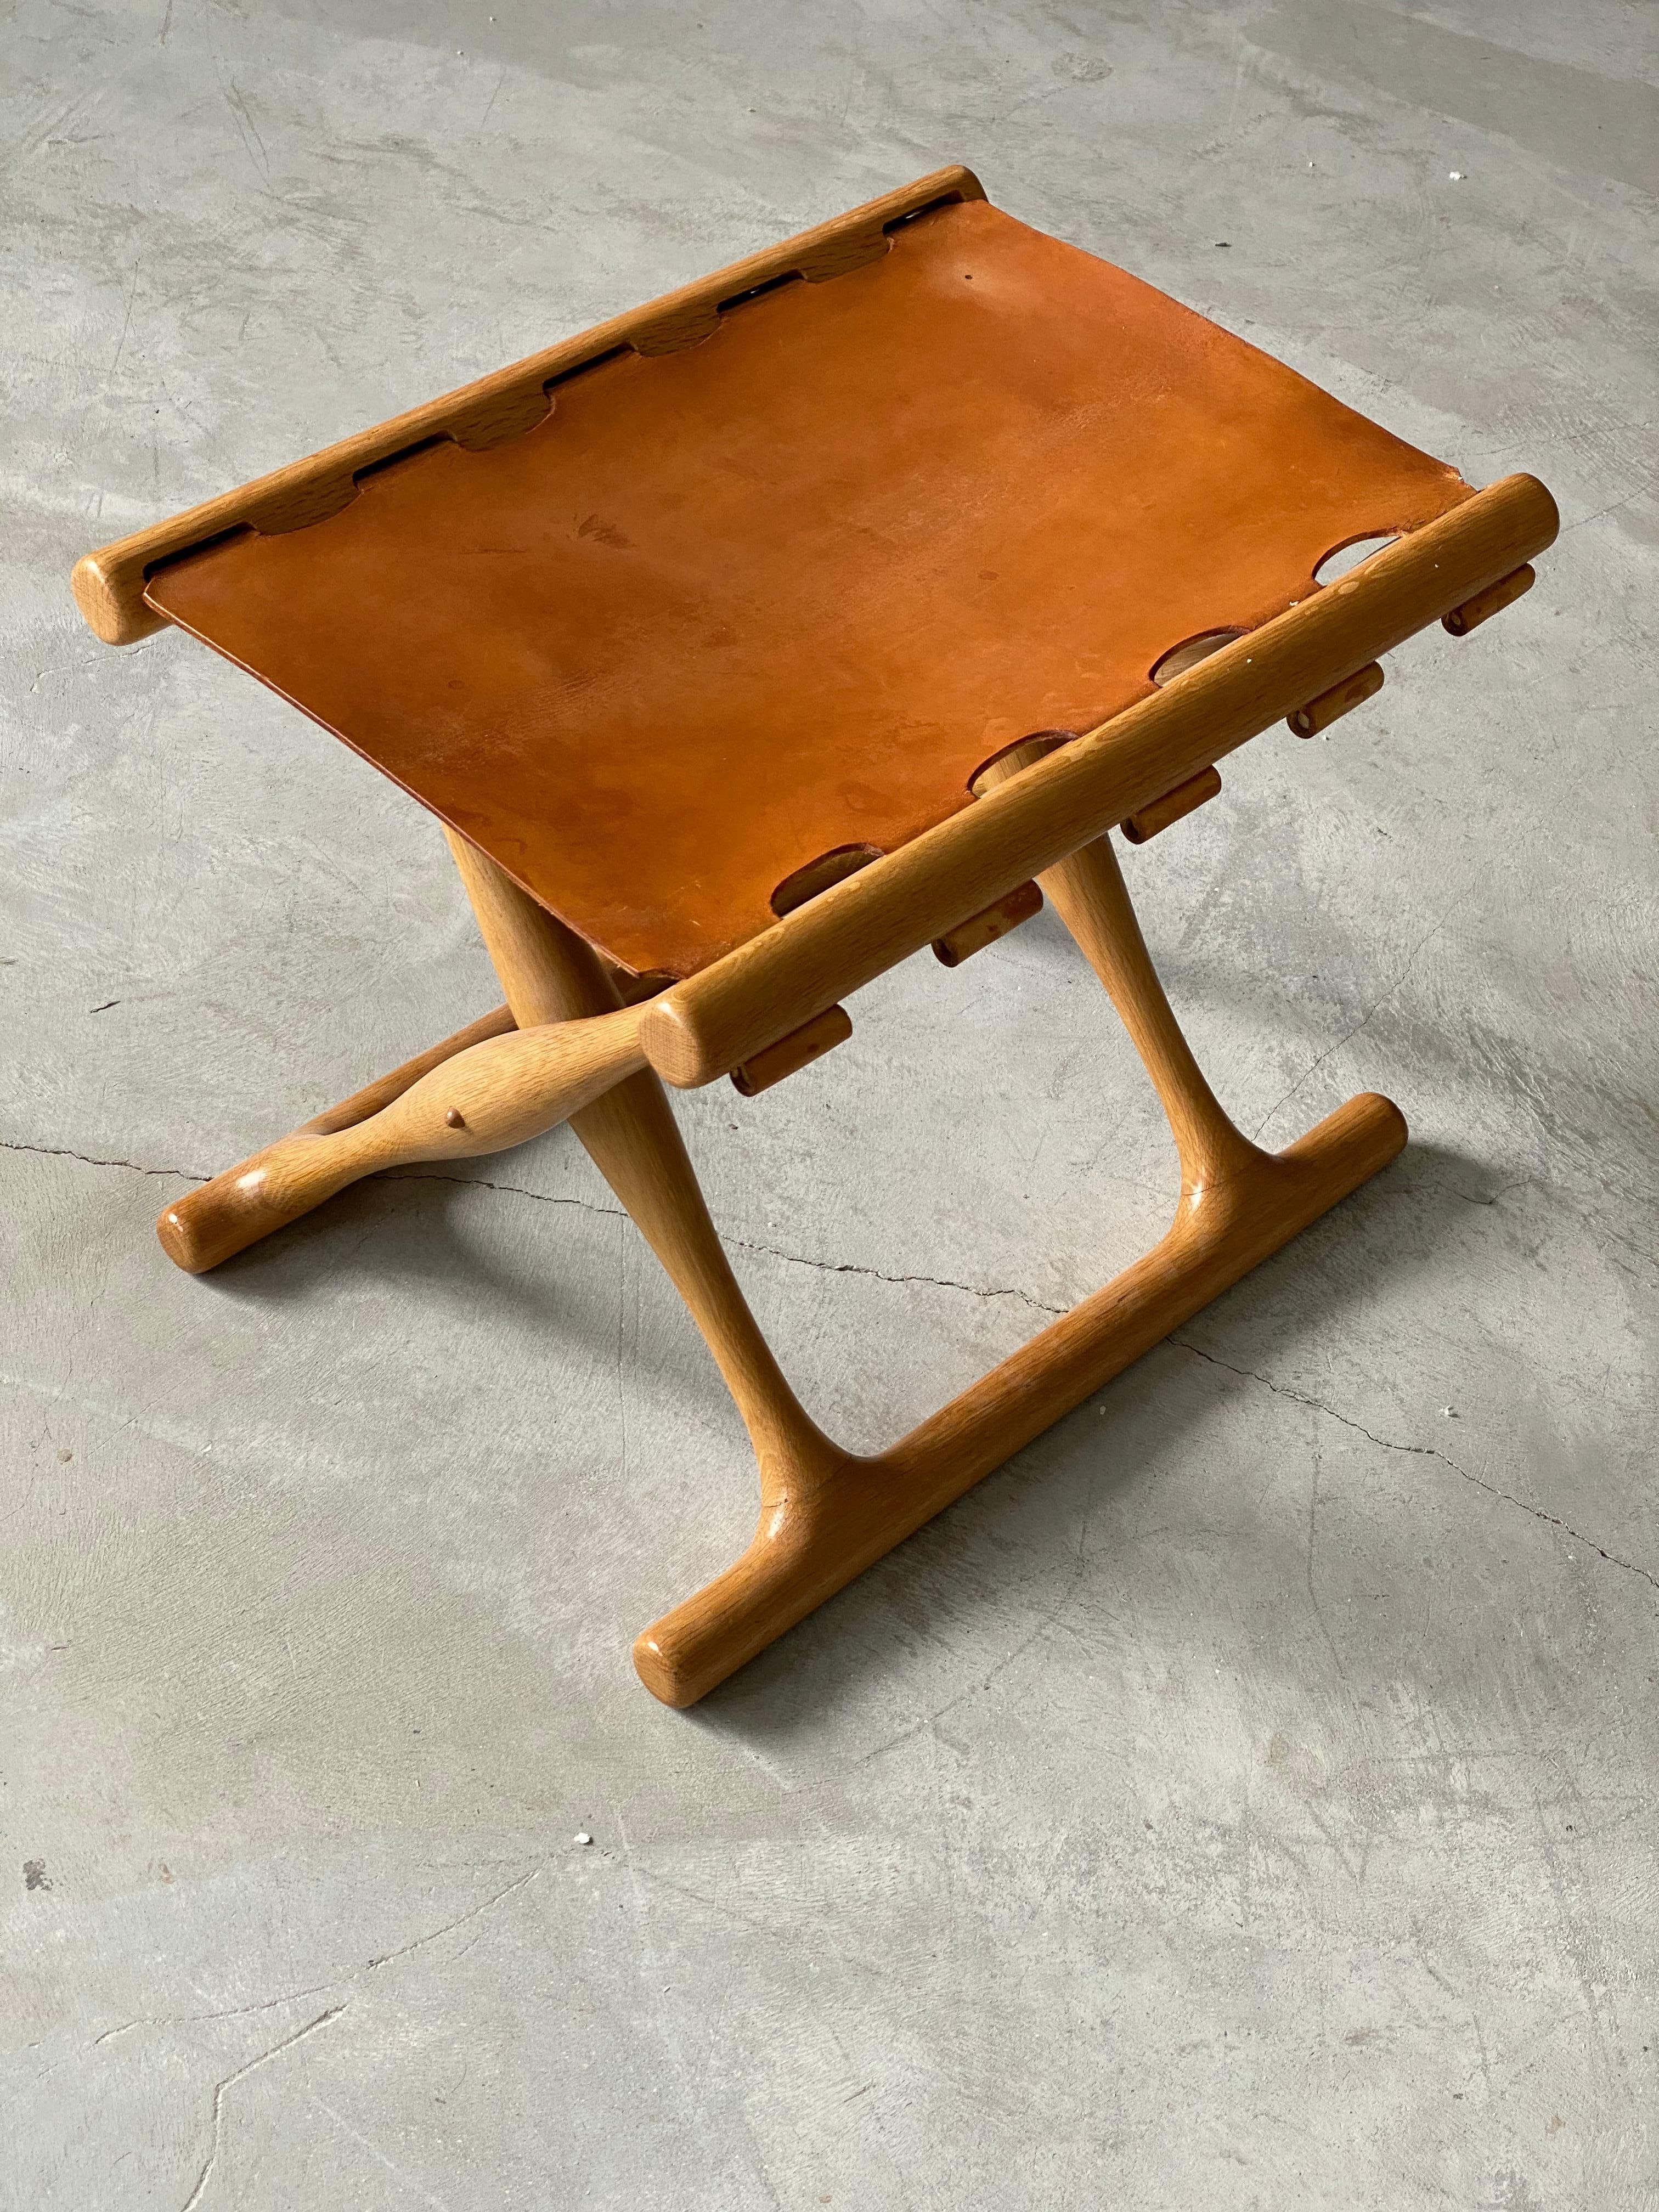 Danish Poul Hundevad, “Guldhøj” Folding Stool, Oak, Natural Leather, 1960s, Denmark